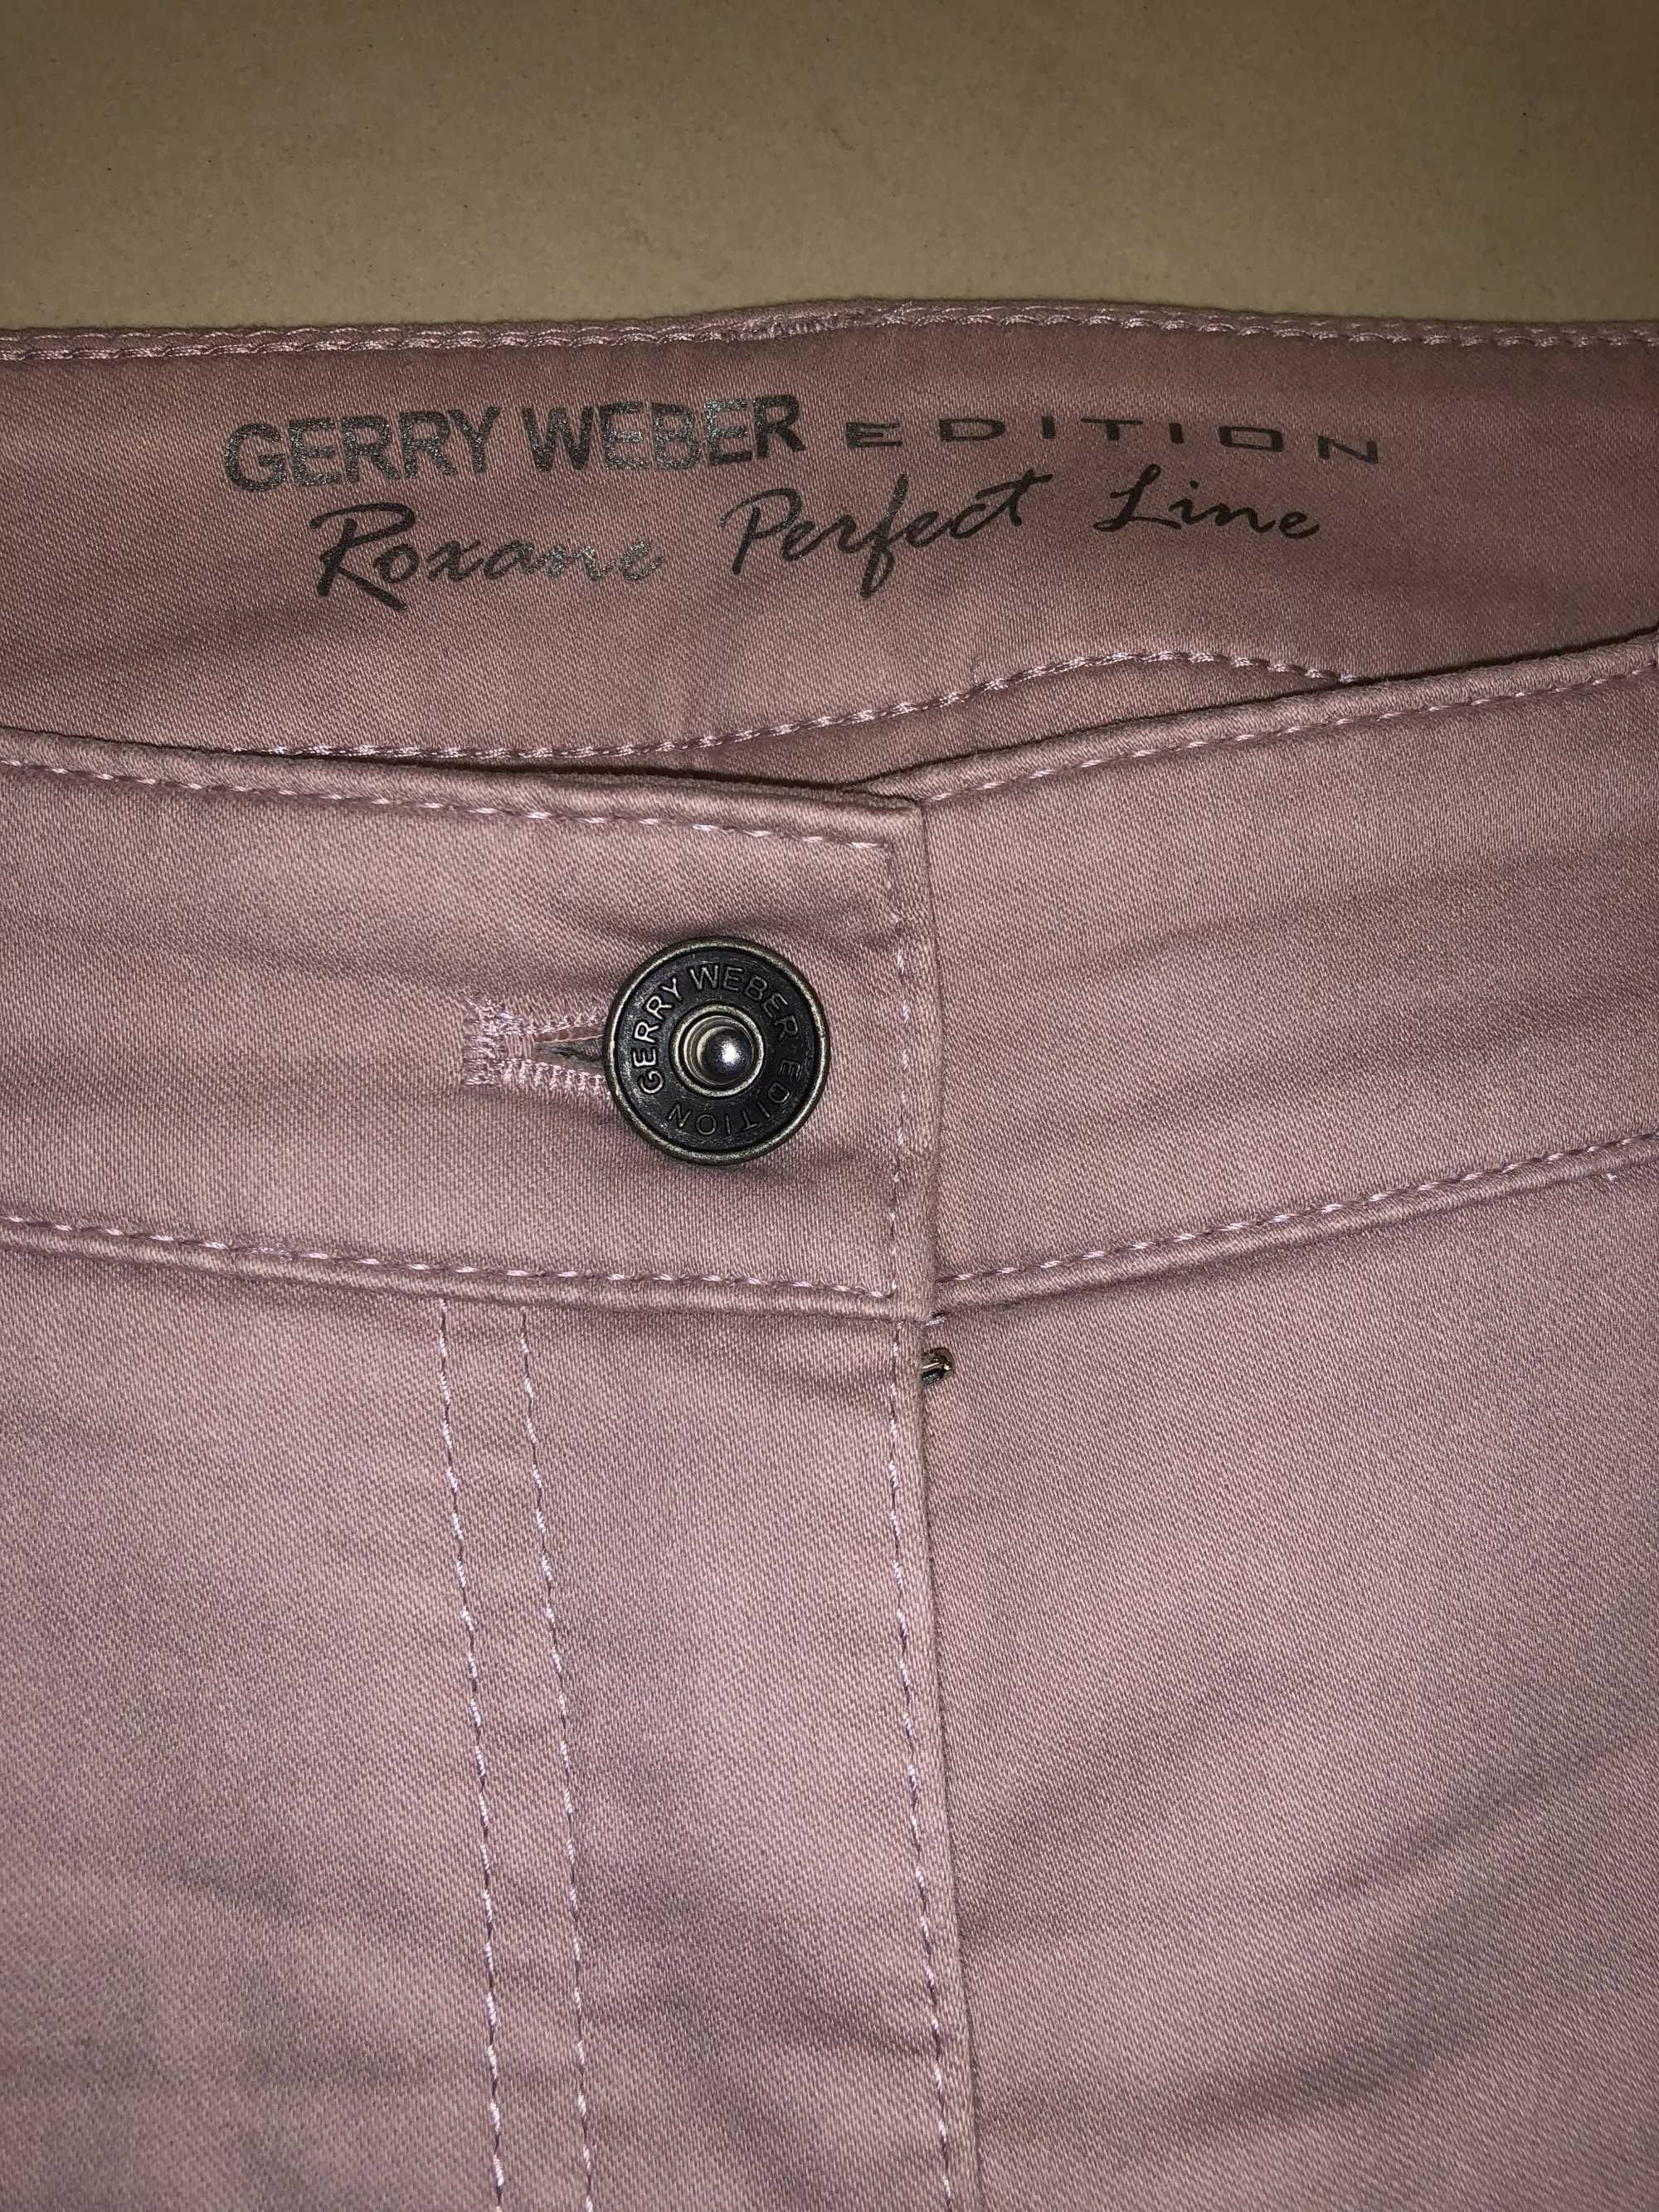 Set pantaloni Zara Woman si Gerry Weber, noi, mar. 42